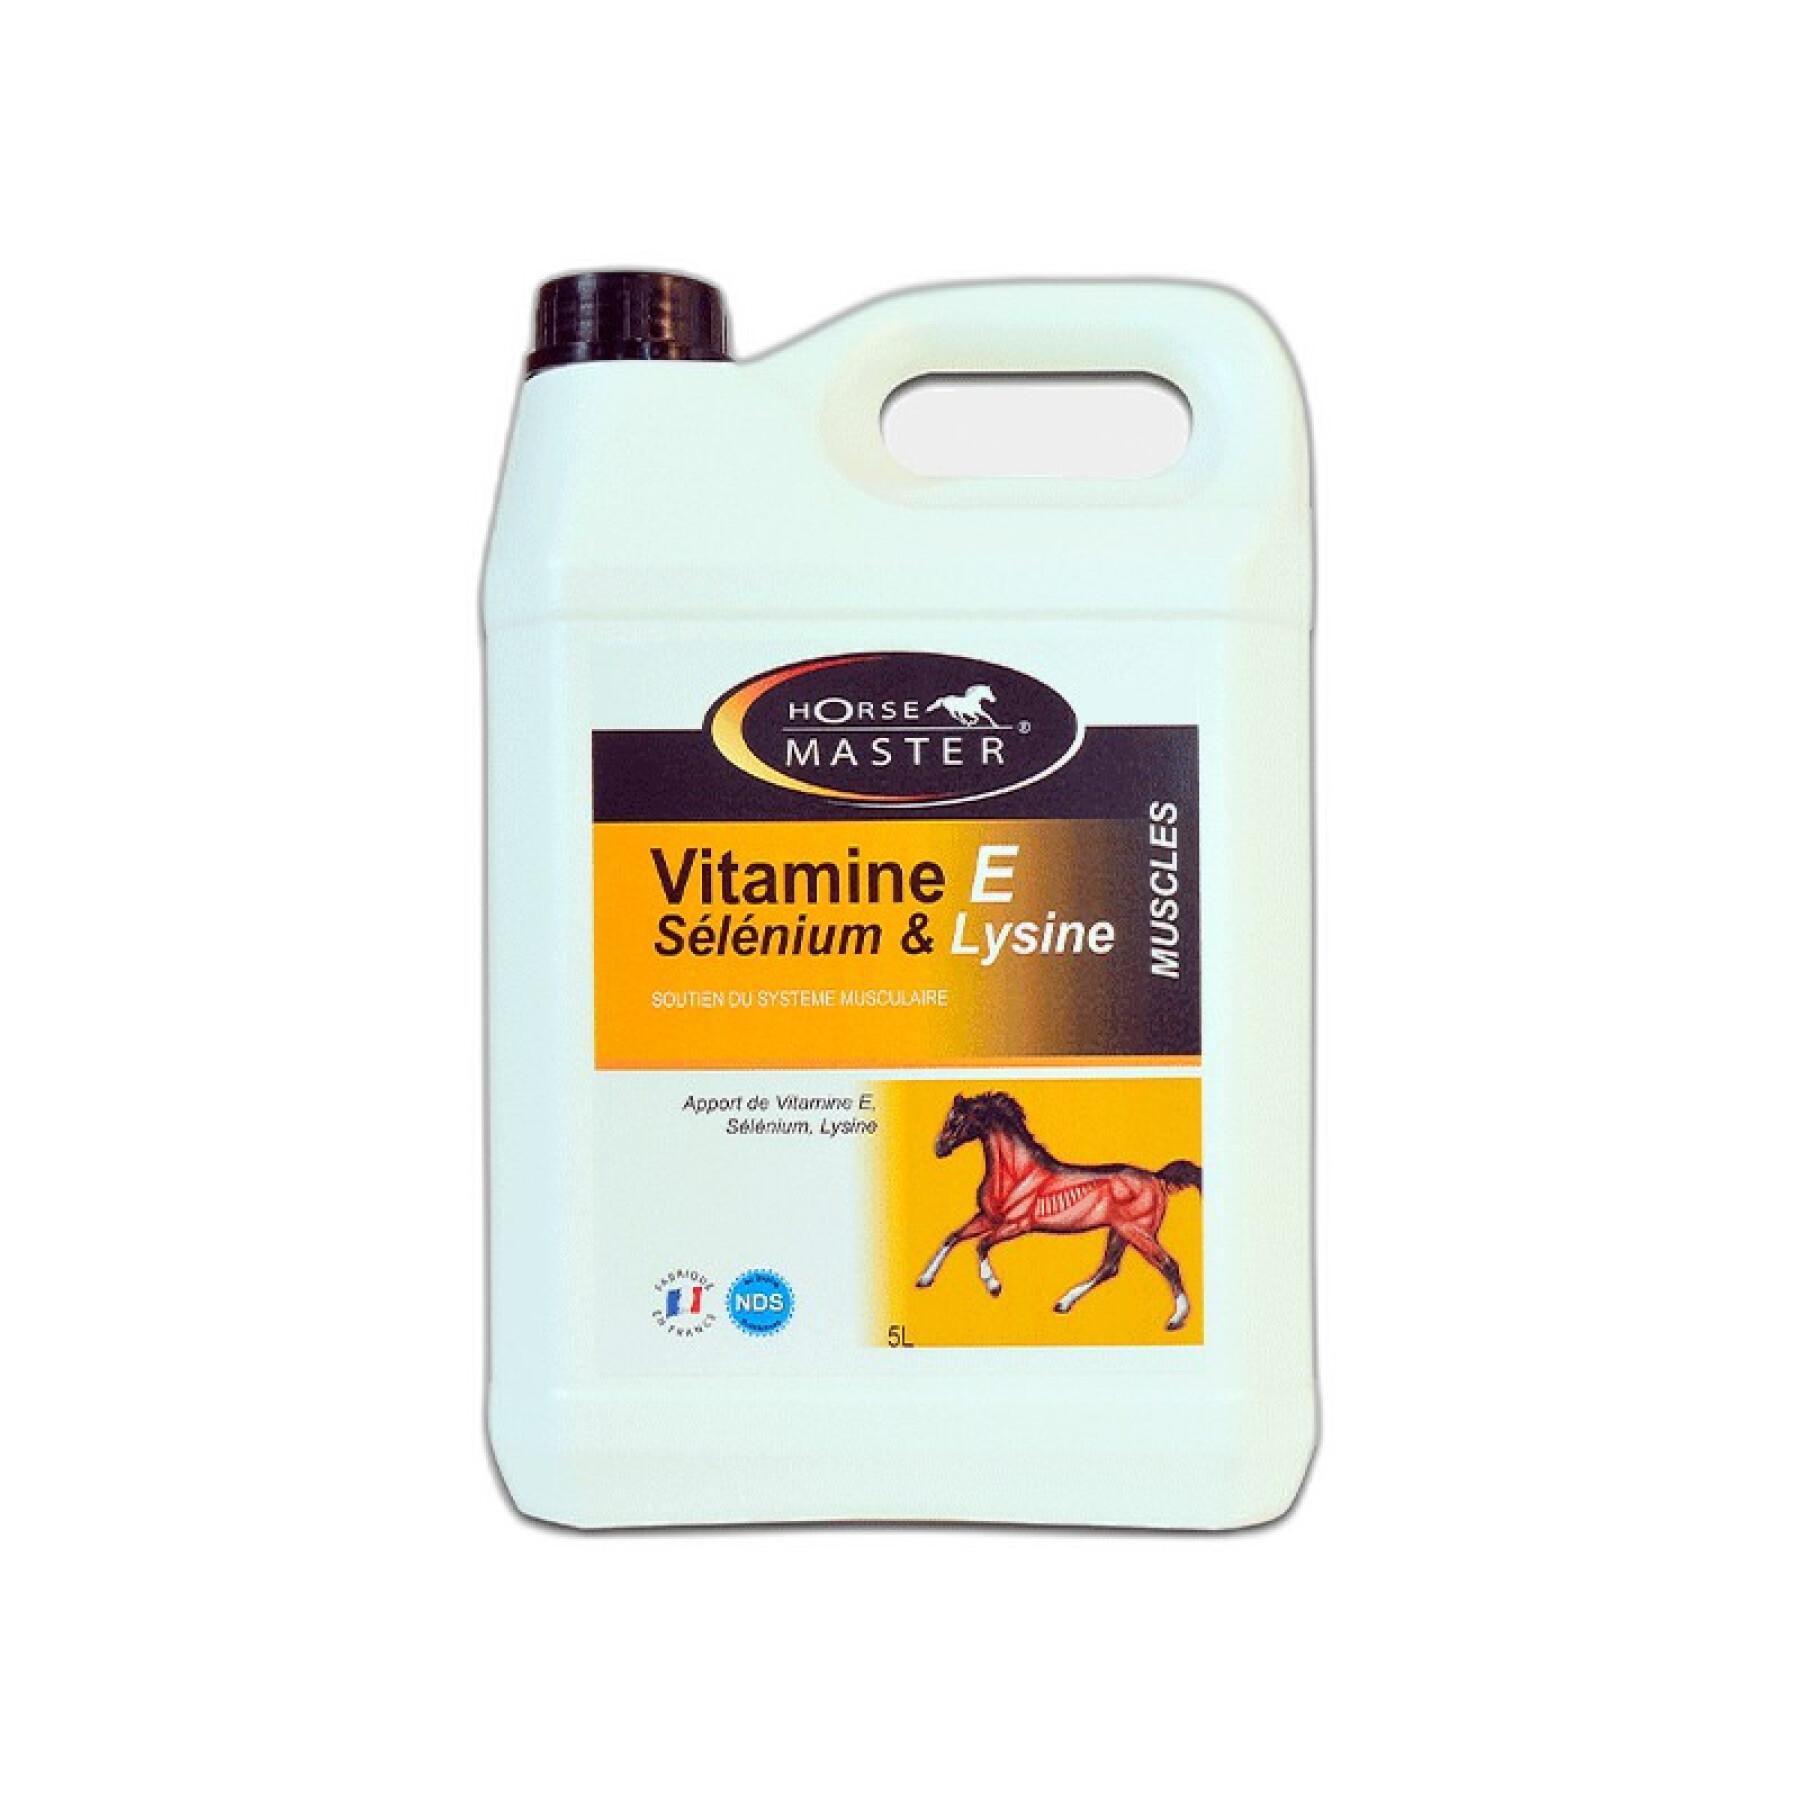 Vitaminen e - selenium - lysine - vloeibaar voor paarden Horse Master